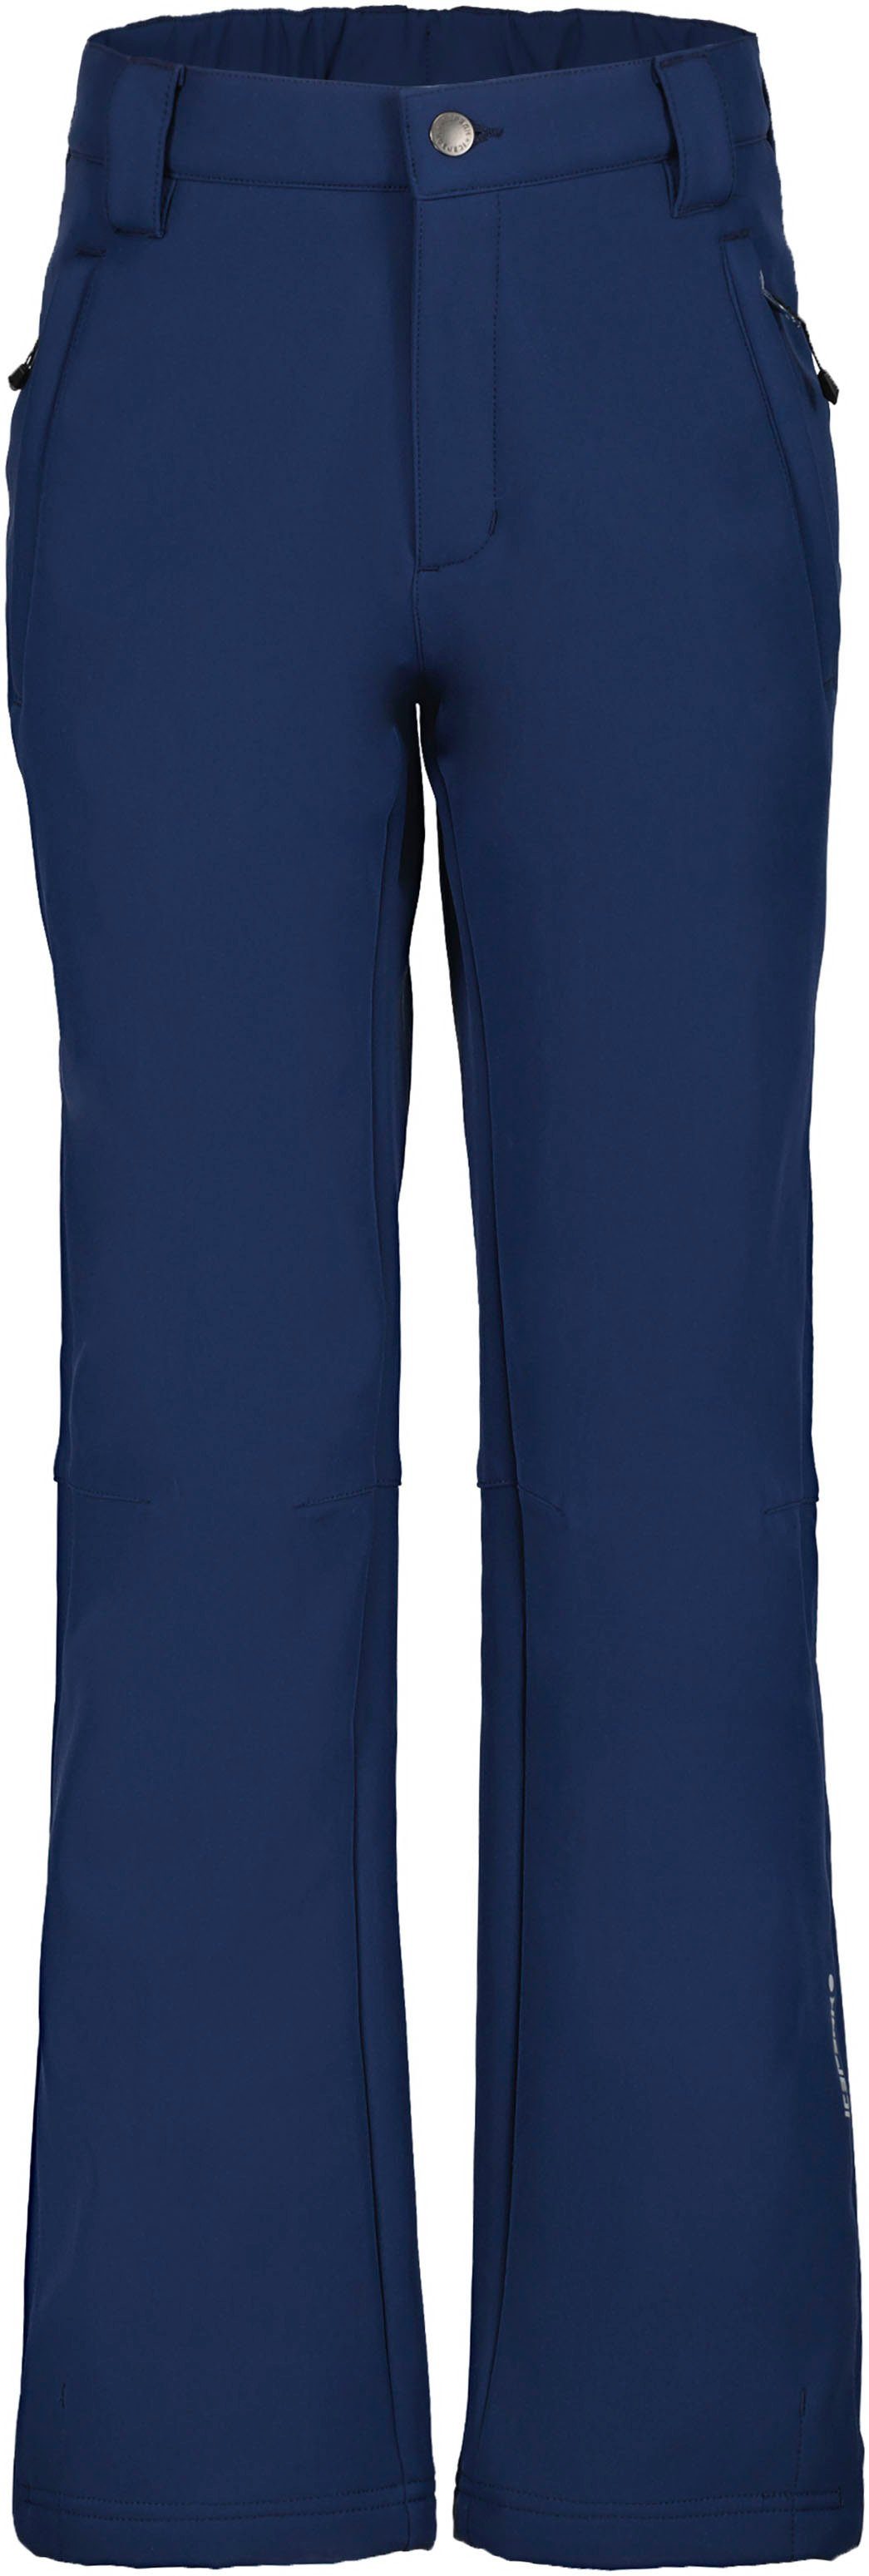 KABWE Softshellhose mit Reißverschlusstaschen für Kinder Icepeak - BLUE JR DARK